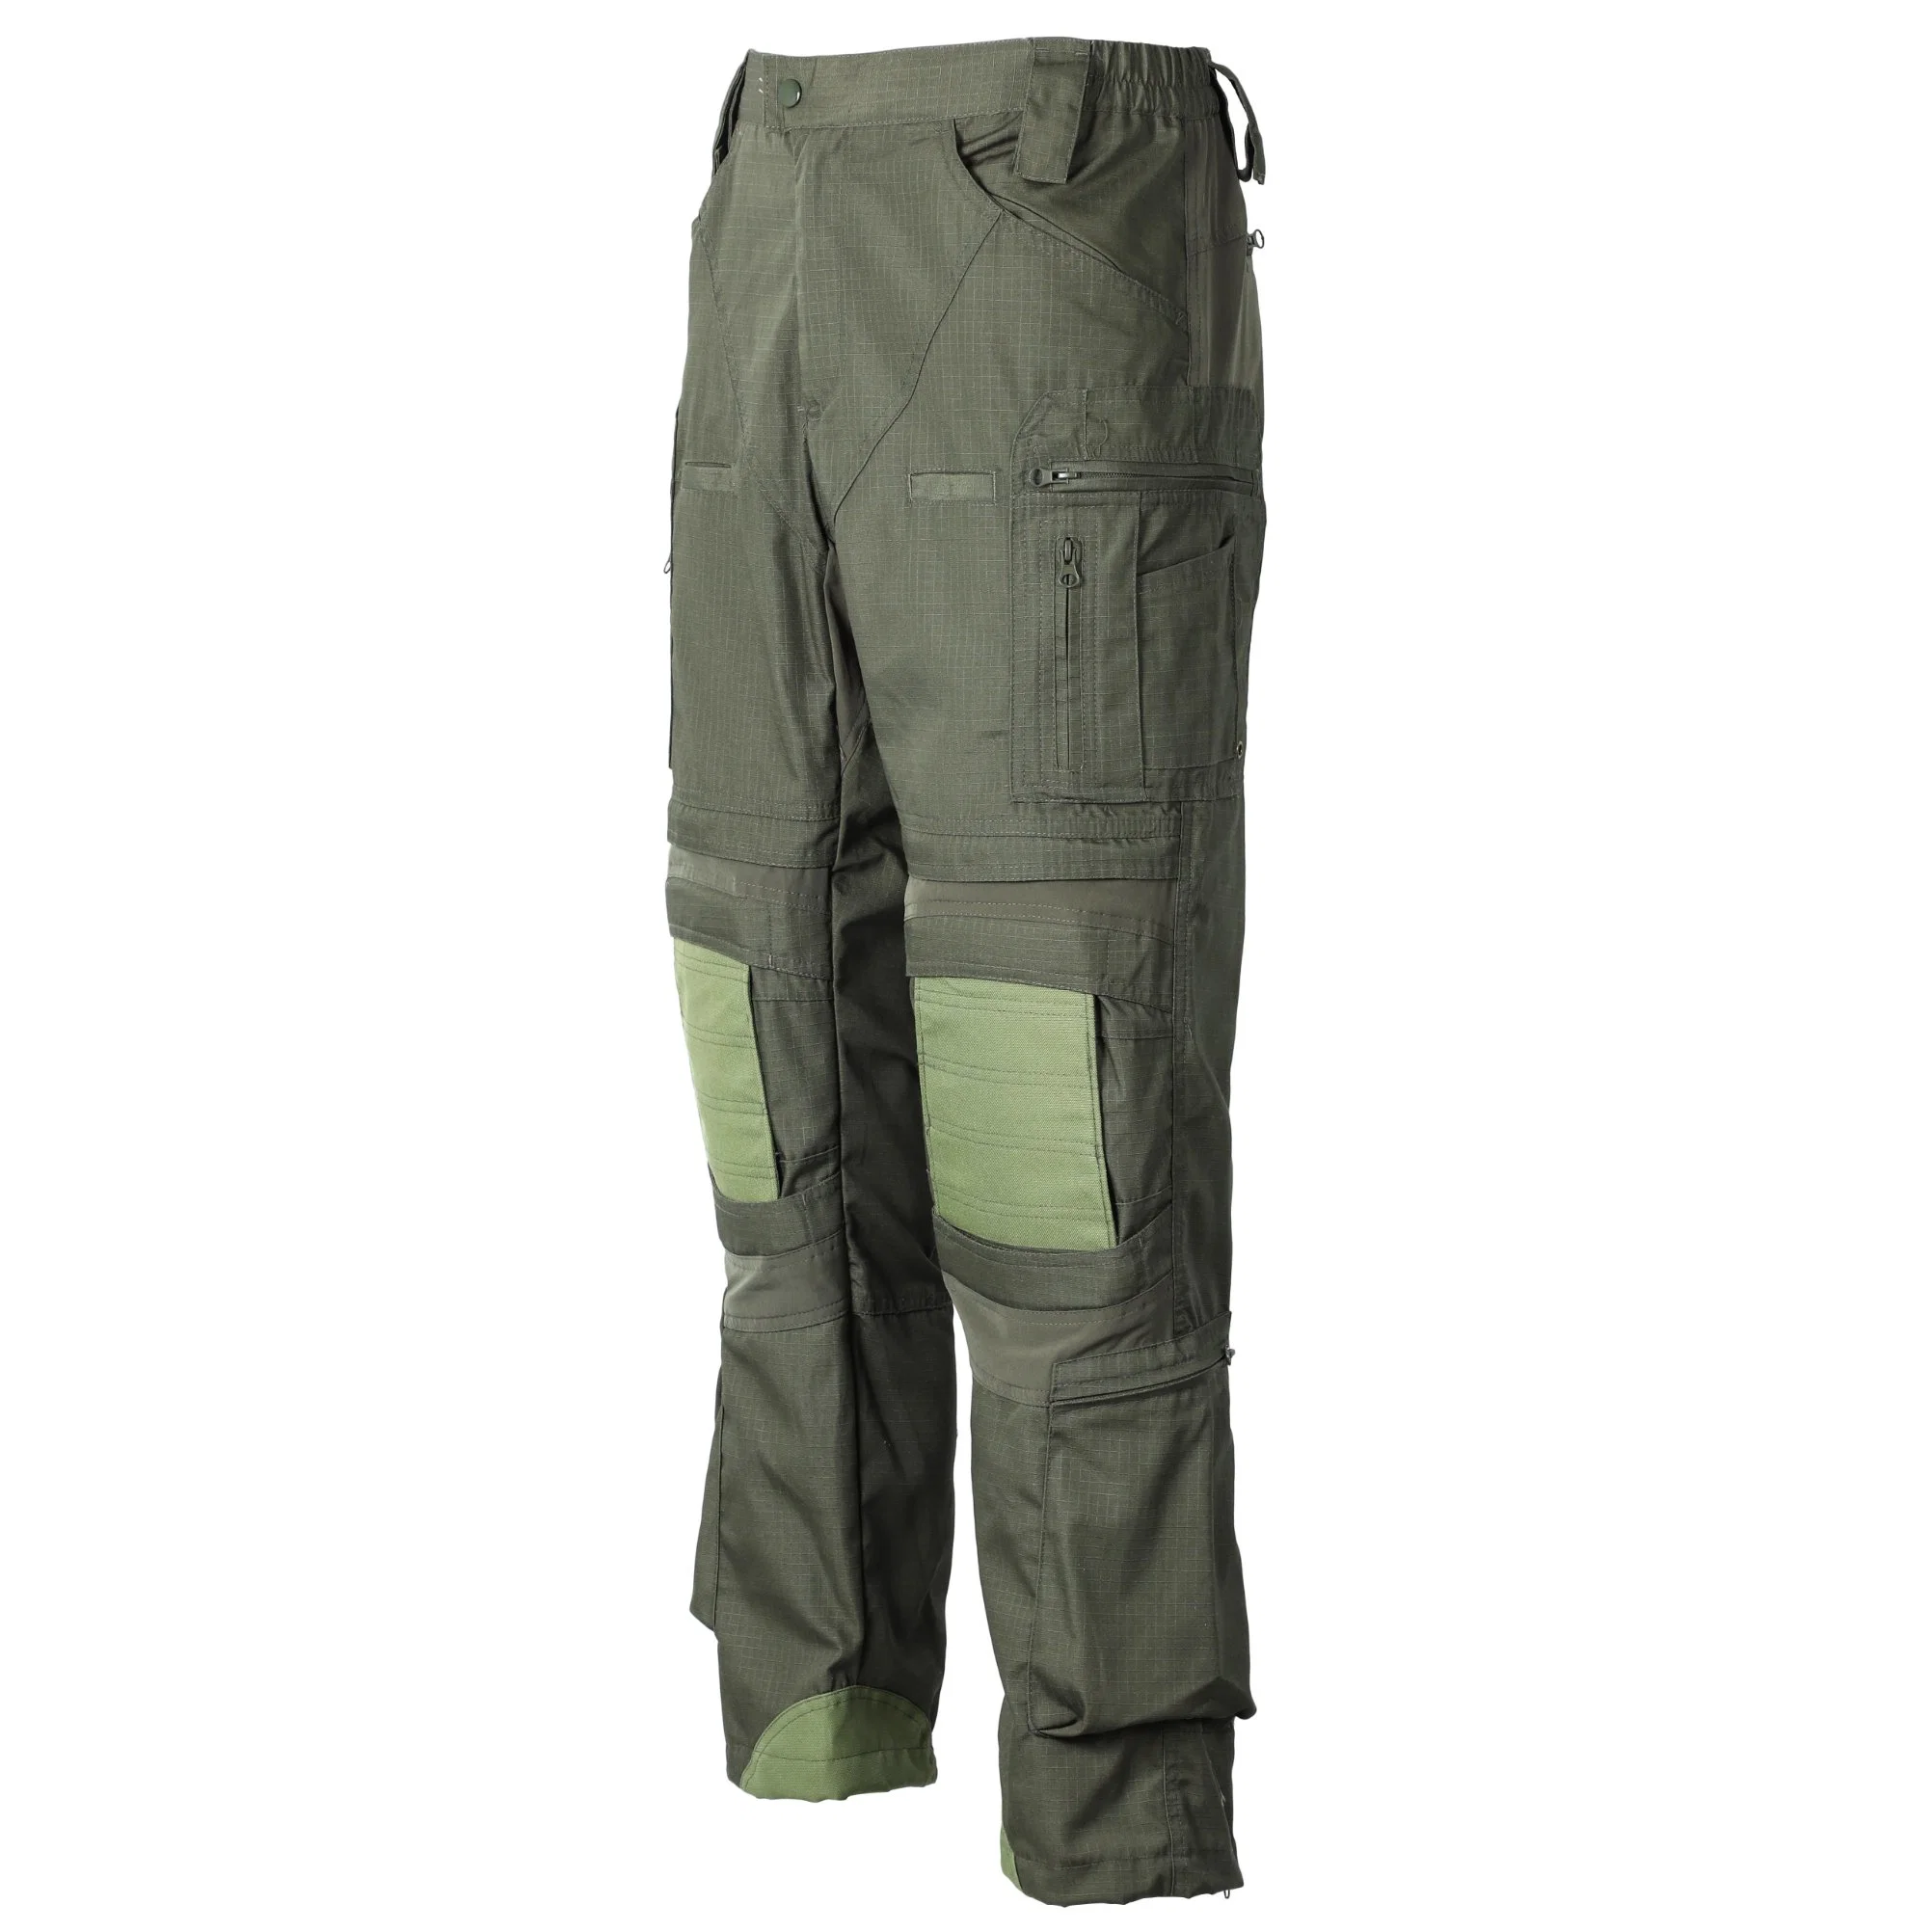 Comercio al por mayor baratos en cantidades grandes de bolsillo 6 Mens estilo militar táctico Cargo Pantalones pantalones para hombres